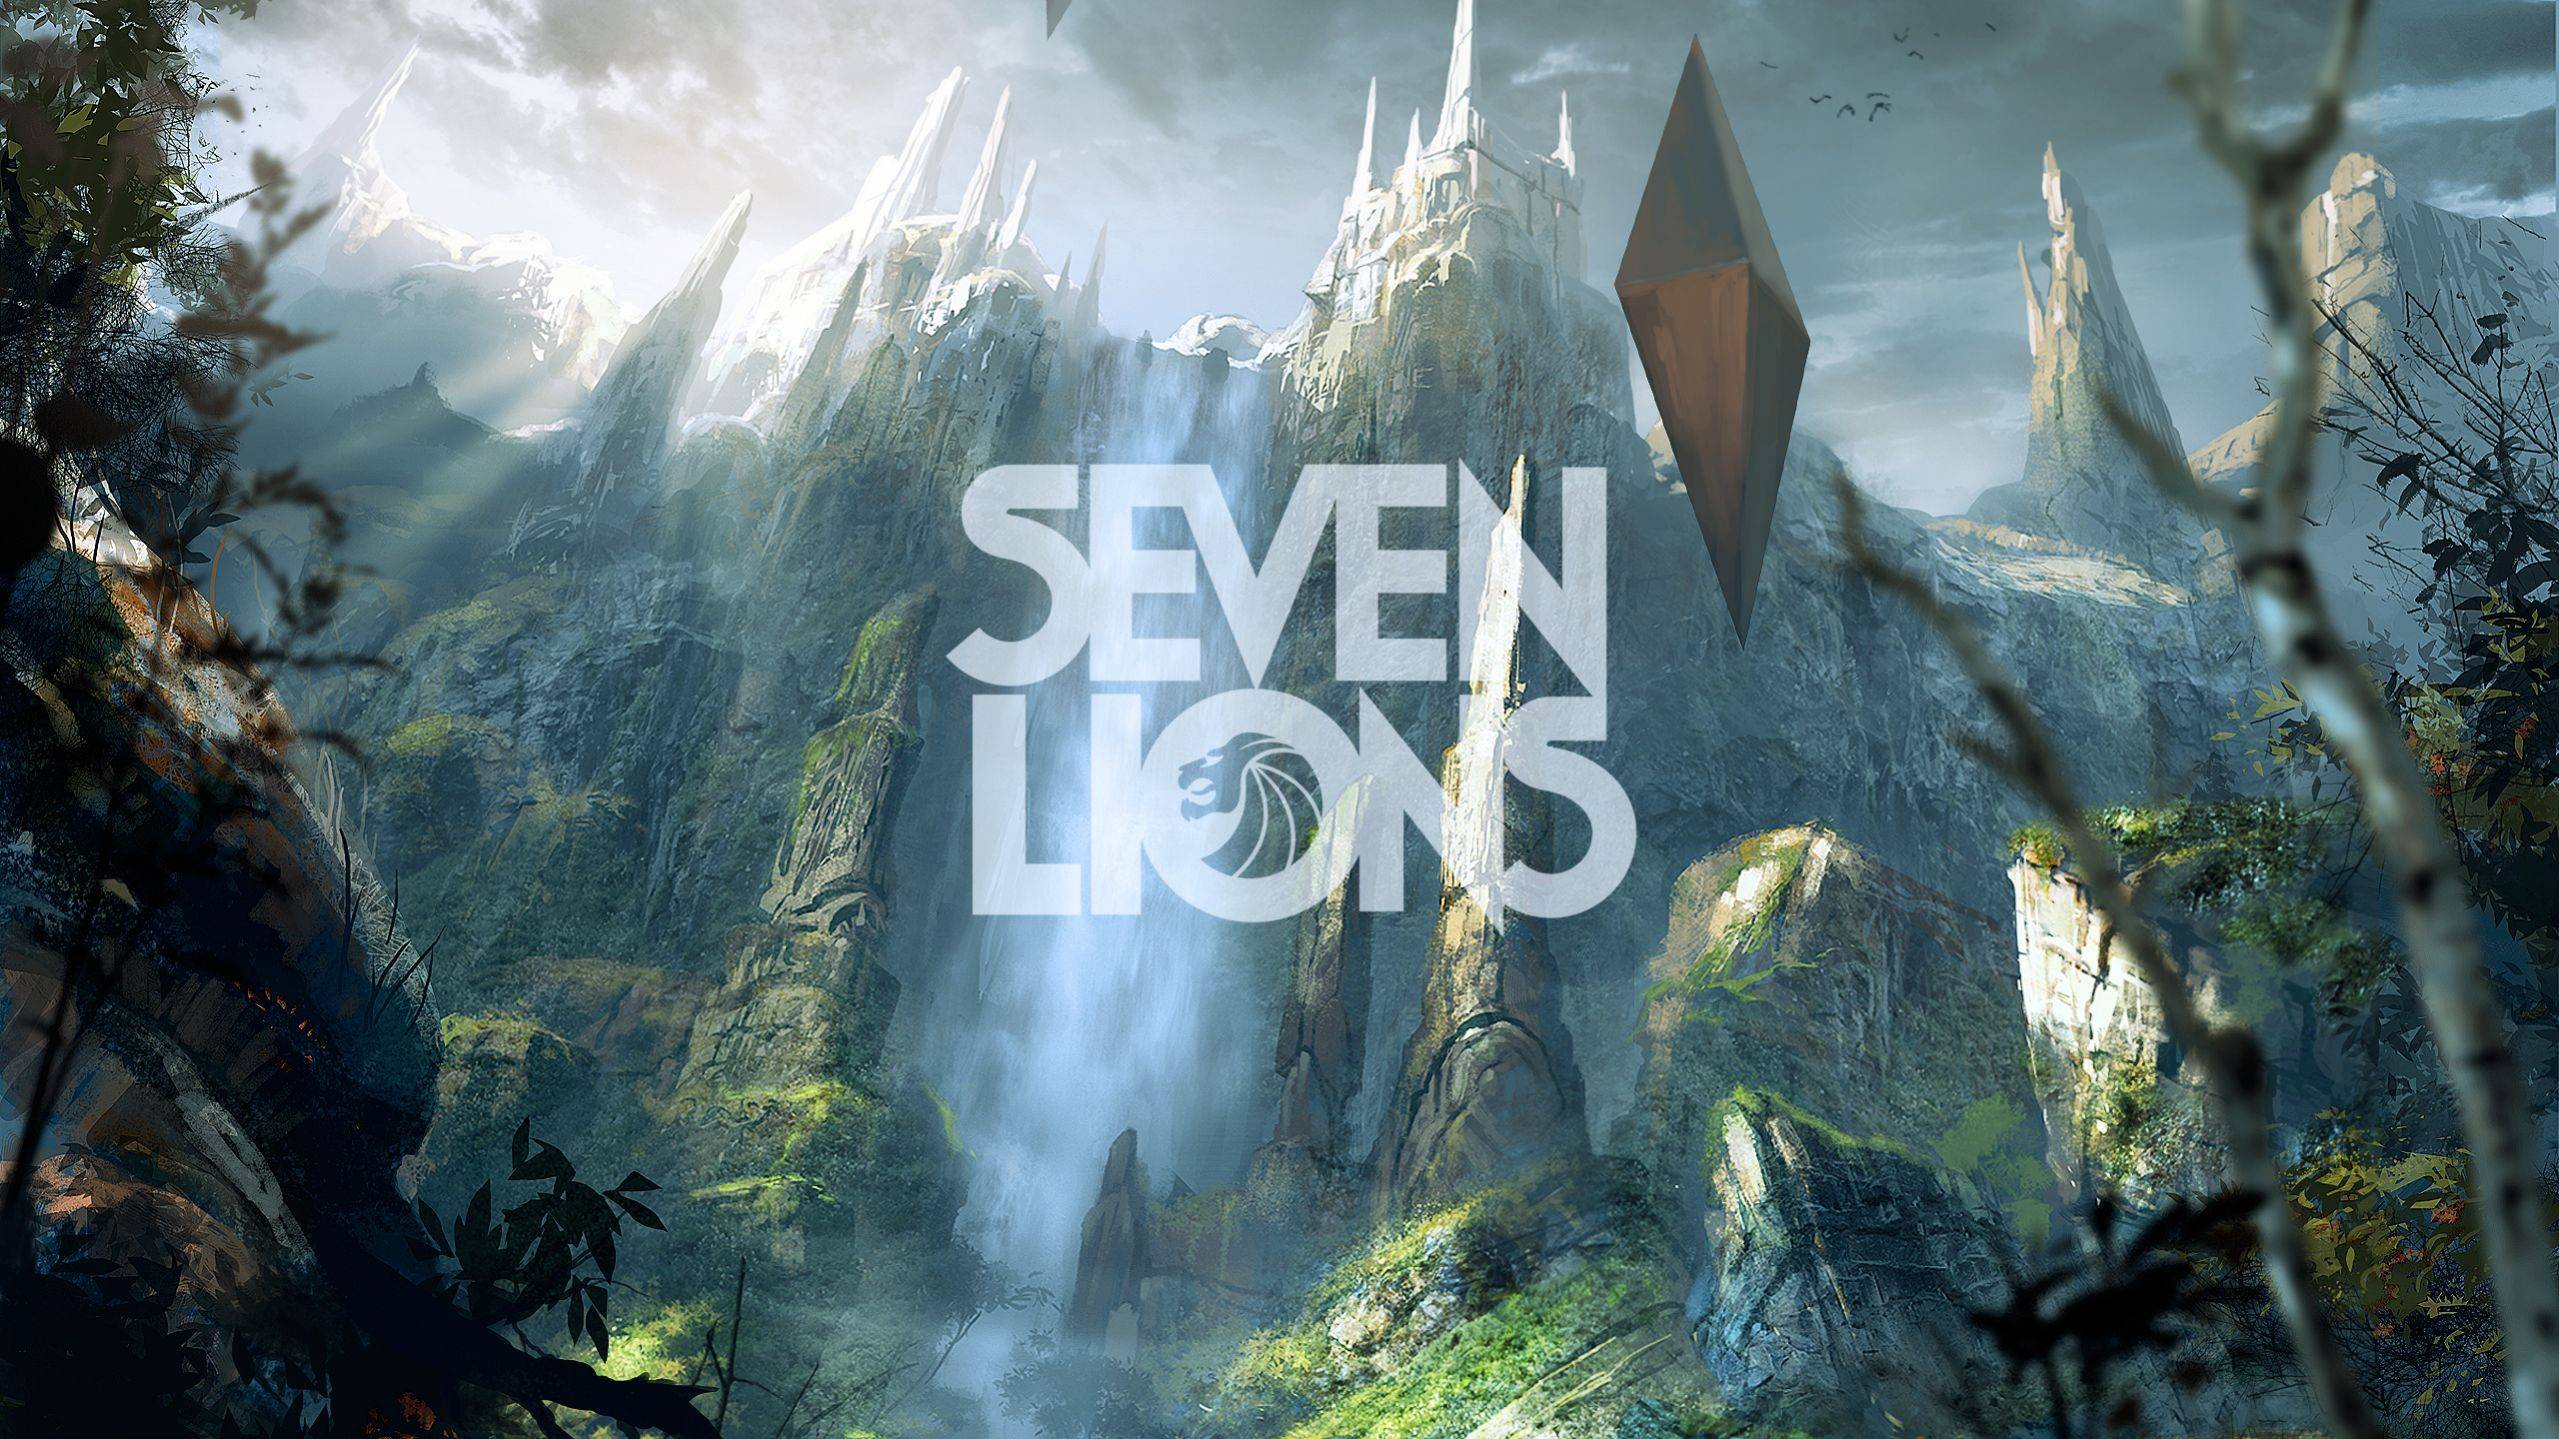 Seven Lions [2560 x 1440]